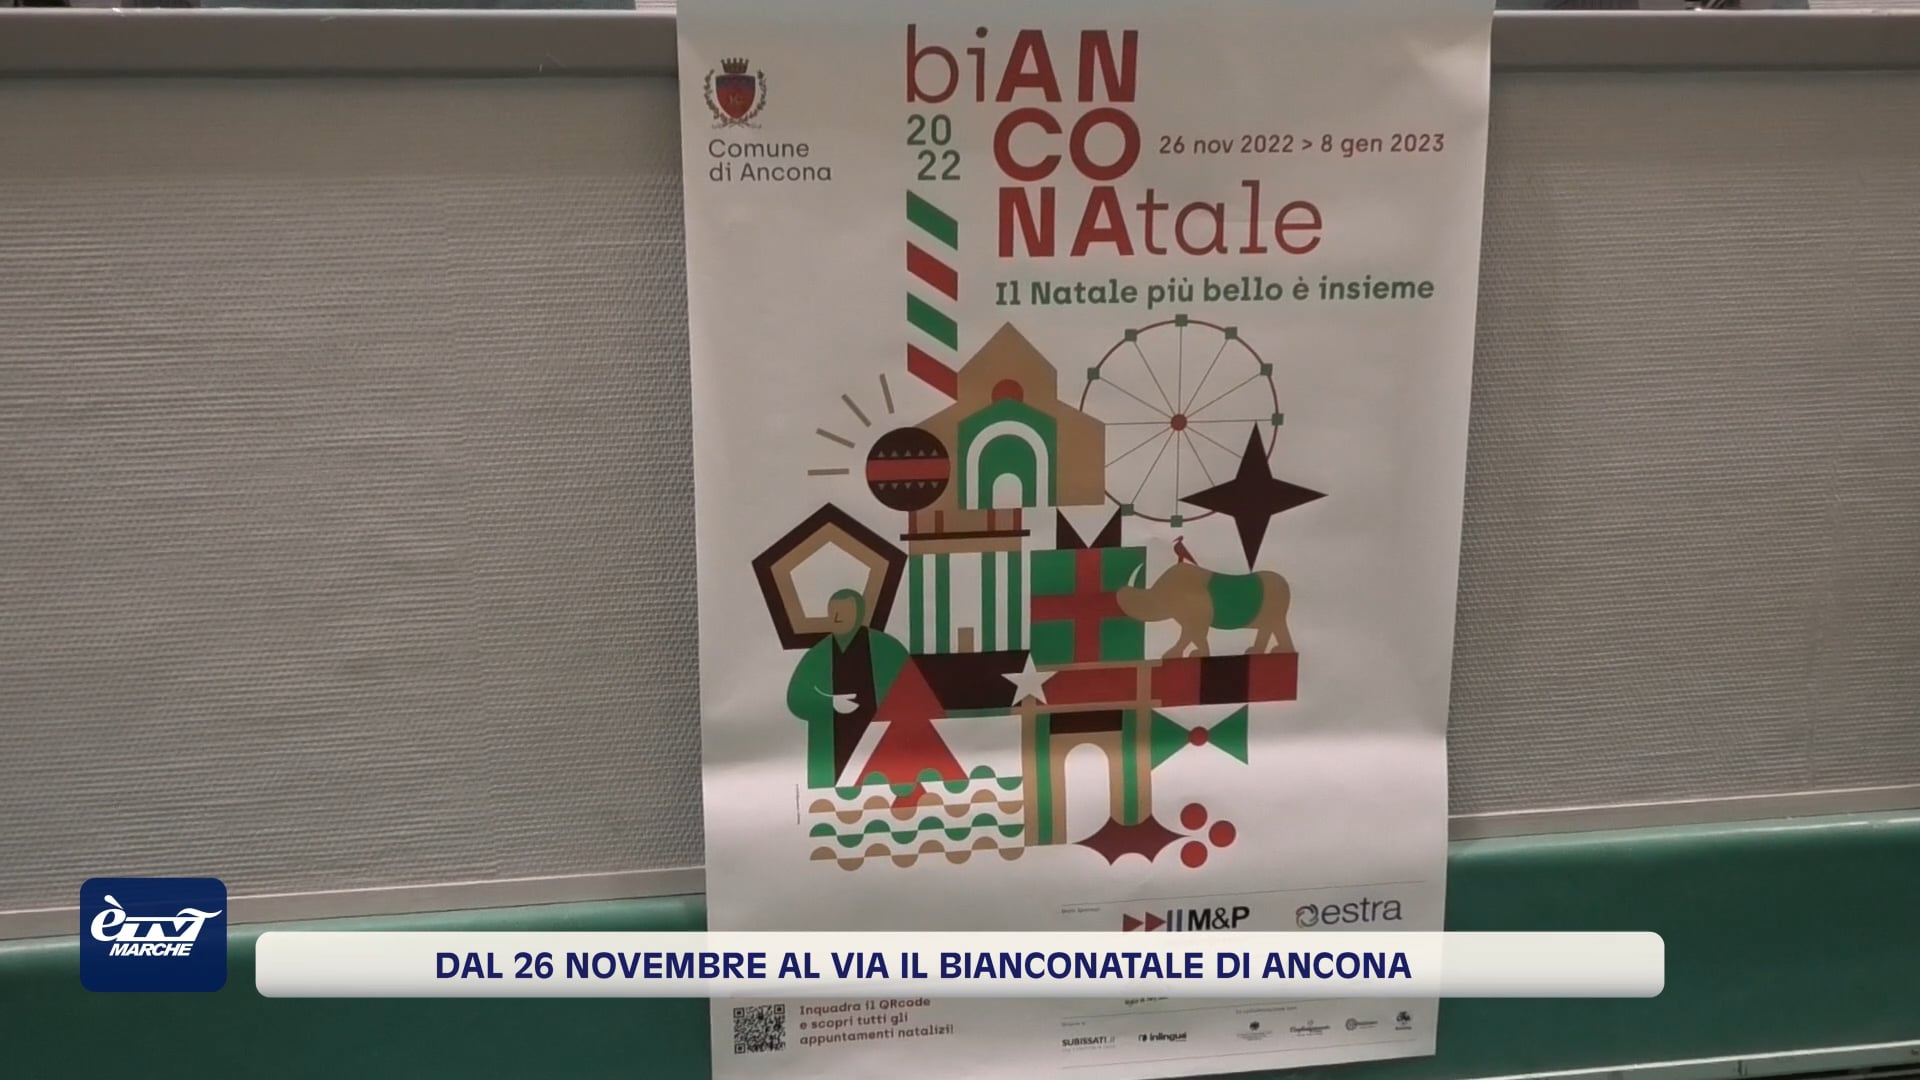 Dal 26 novembre ad Ancona si accende il Bianconatale - VIDEO